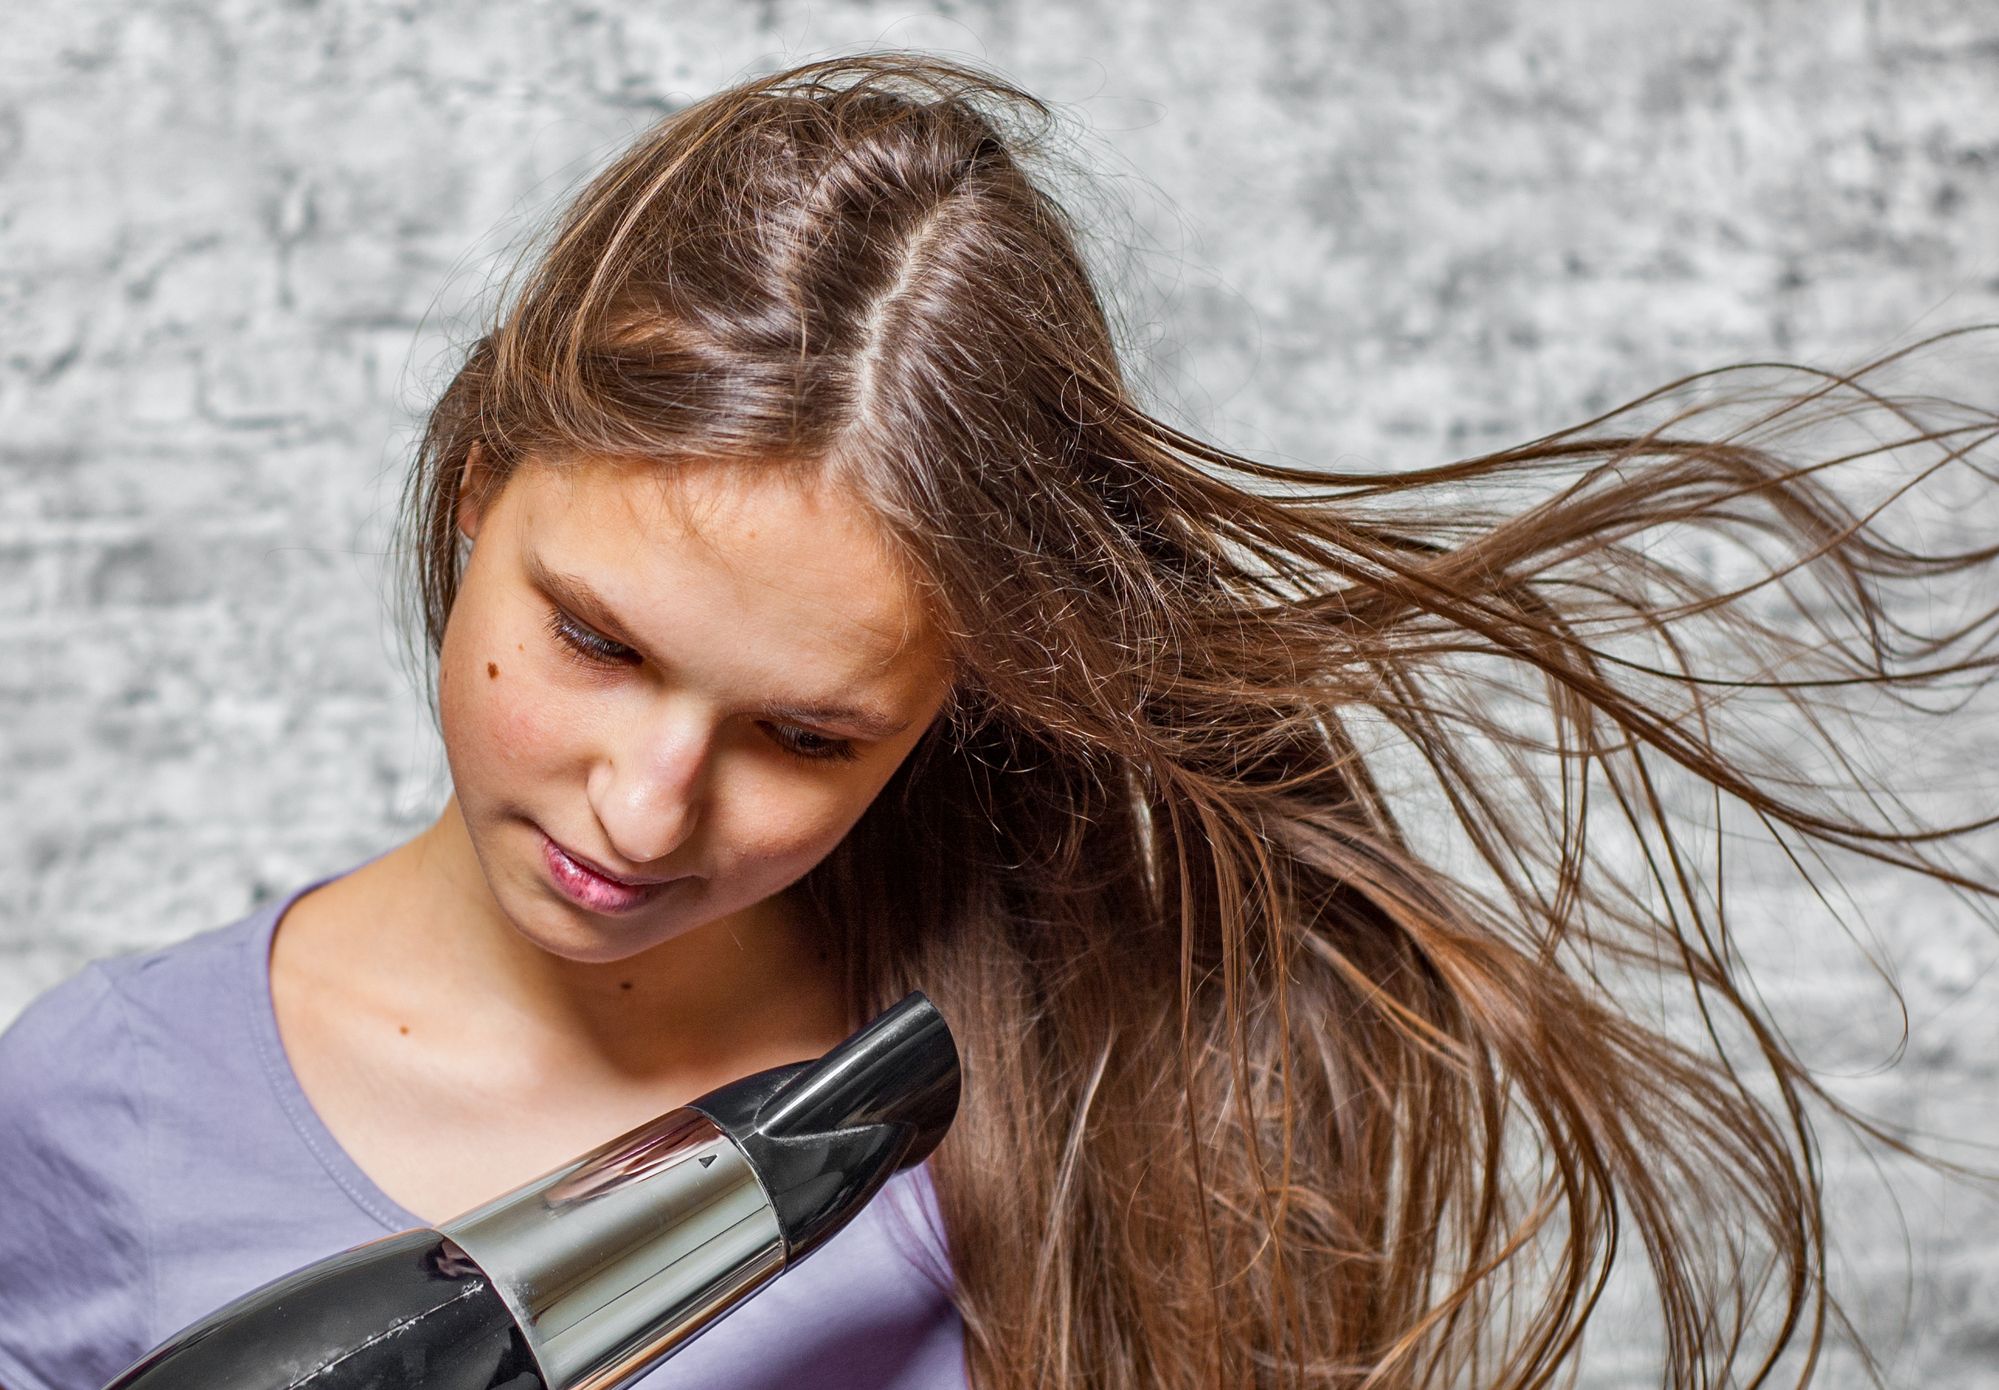 ⁨‎⁨استخدام السشوار يؤثر في نمو الشعر المزروع ويؤدي لتساقطه⁩⁩